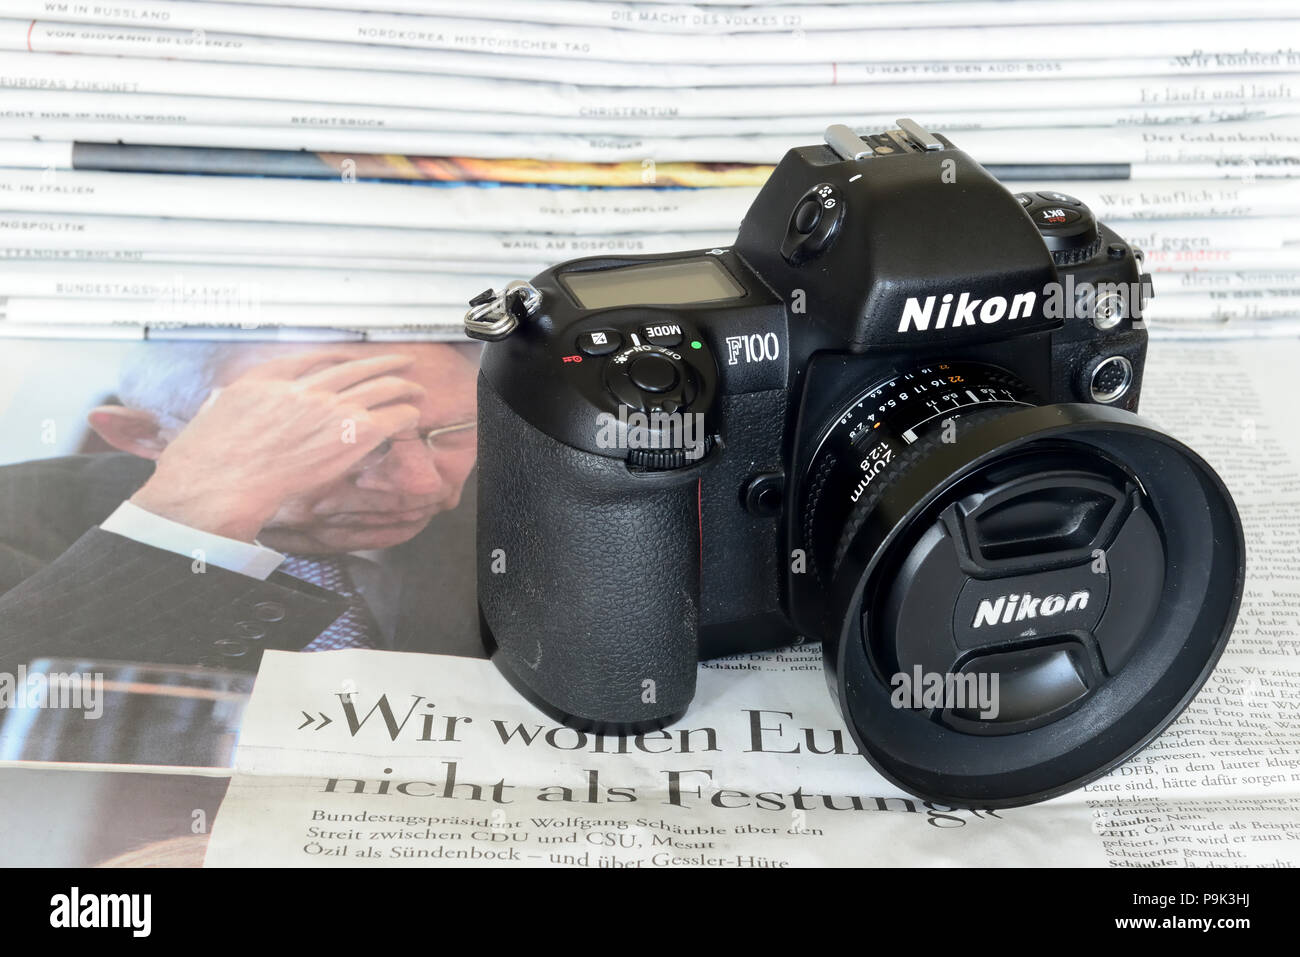 Nikon F100 con obiettivo 20mm. La Nikon F100 è una fotocamera reflex analogica semi-professionale prodotta dal produttore giapponese Nikon Foto Stock